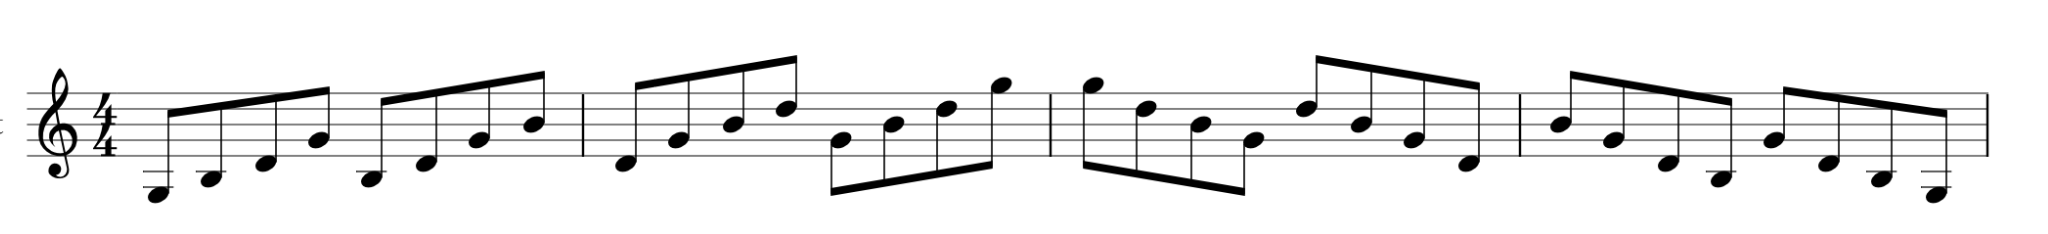 G major broken chord